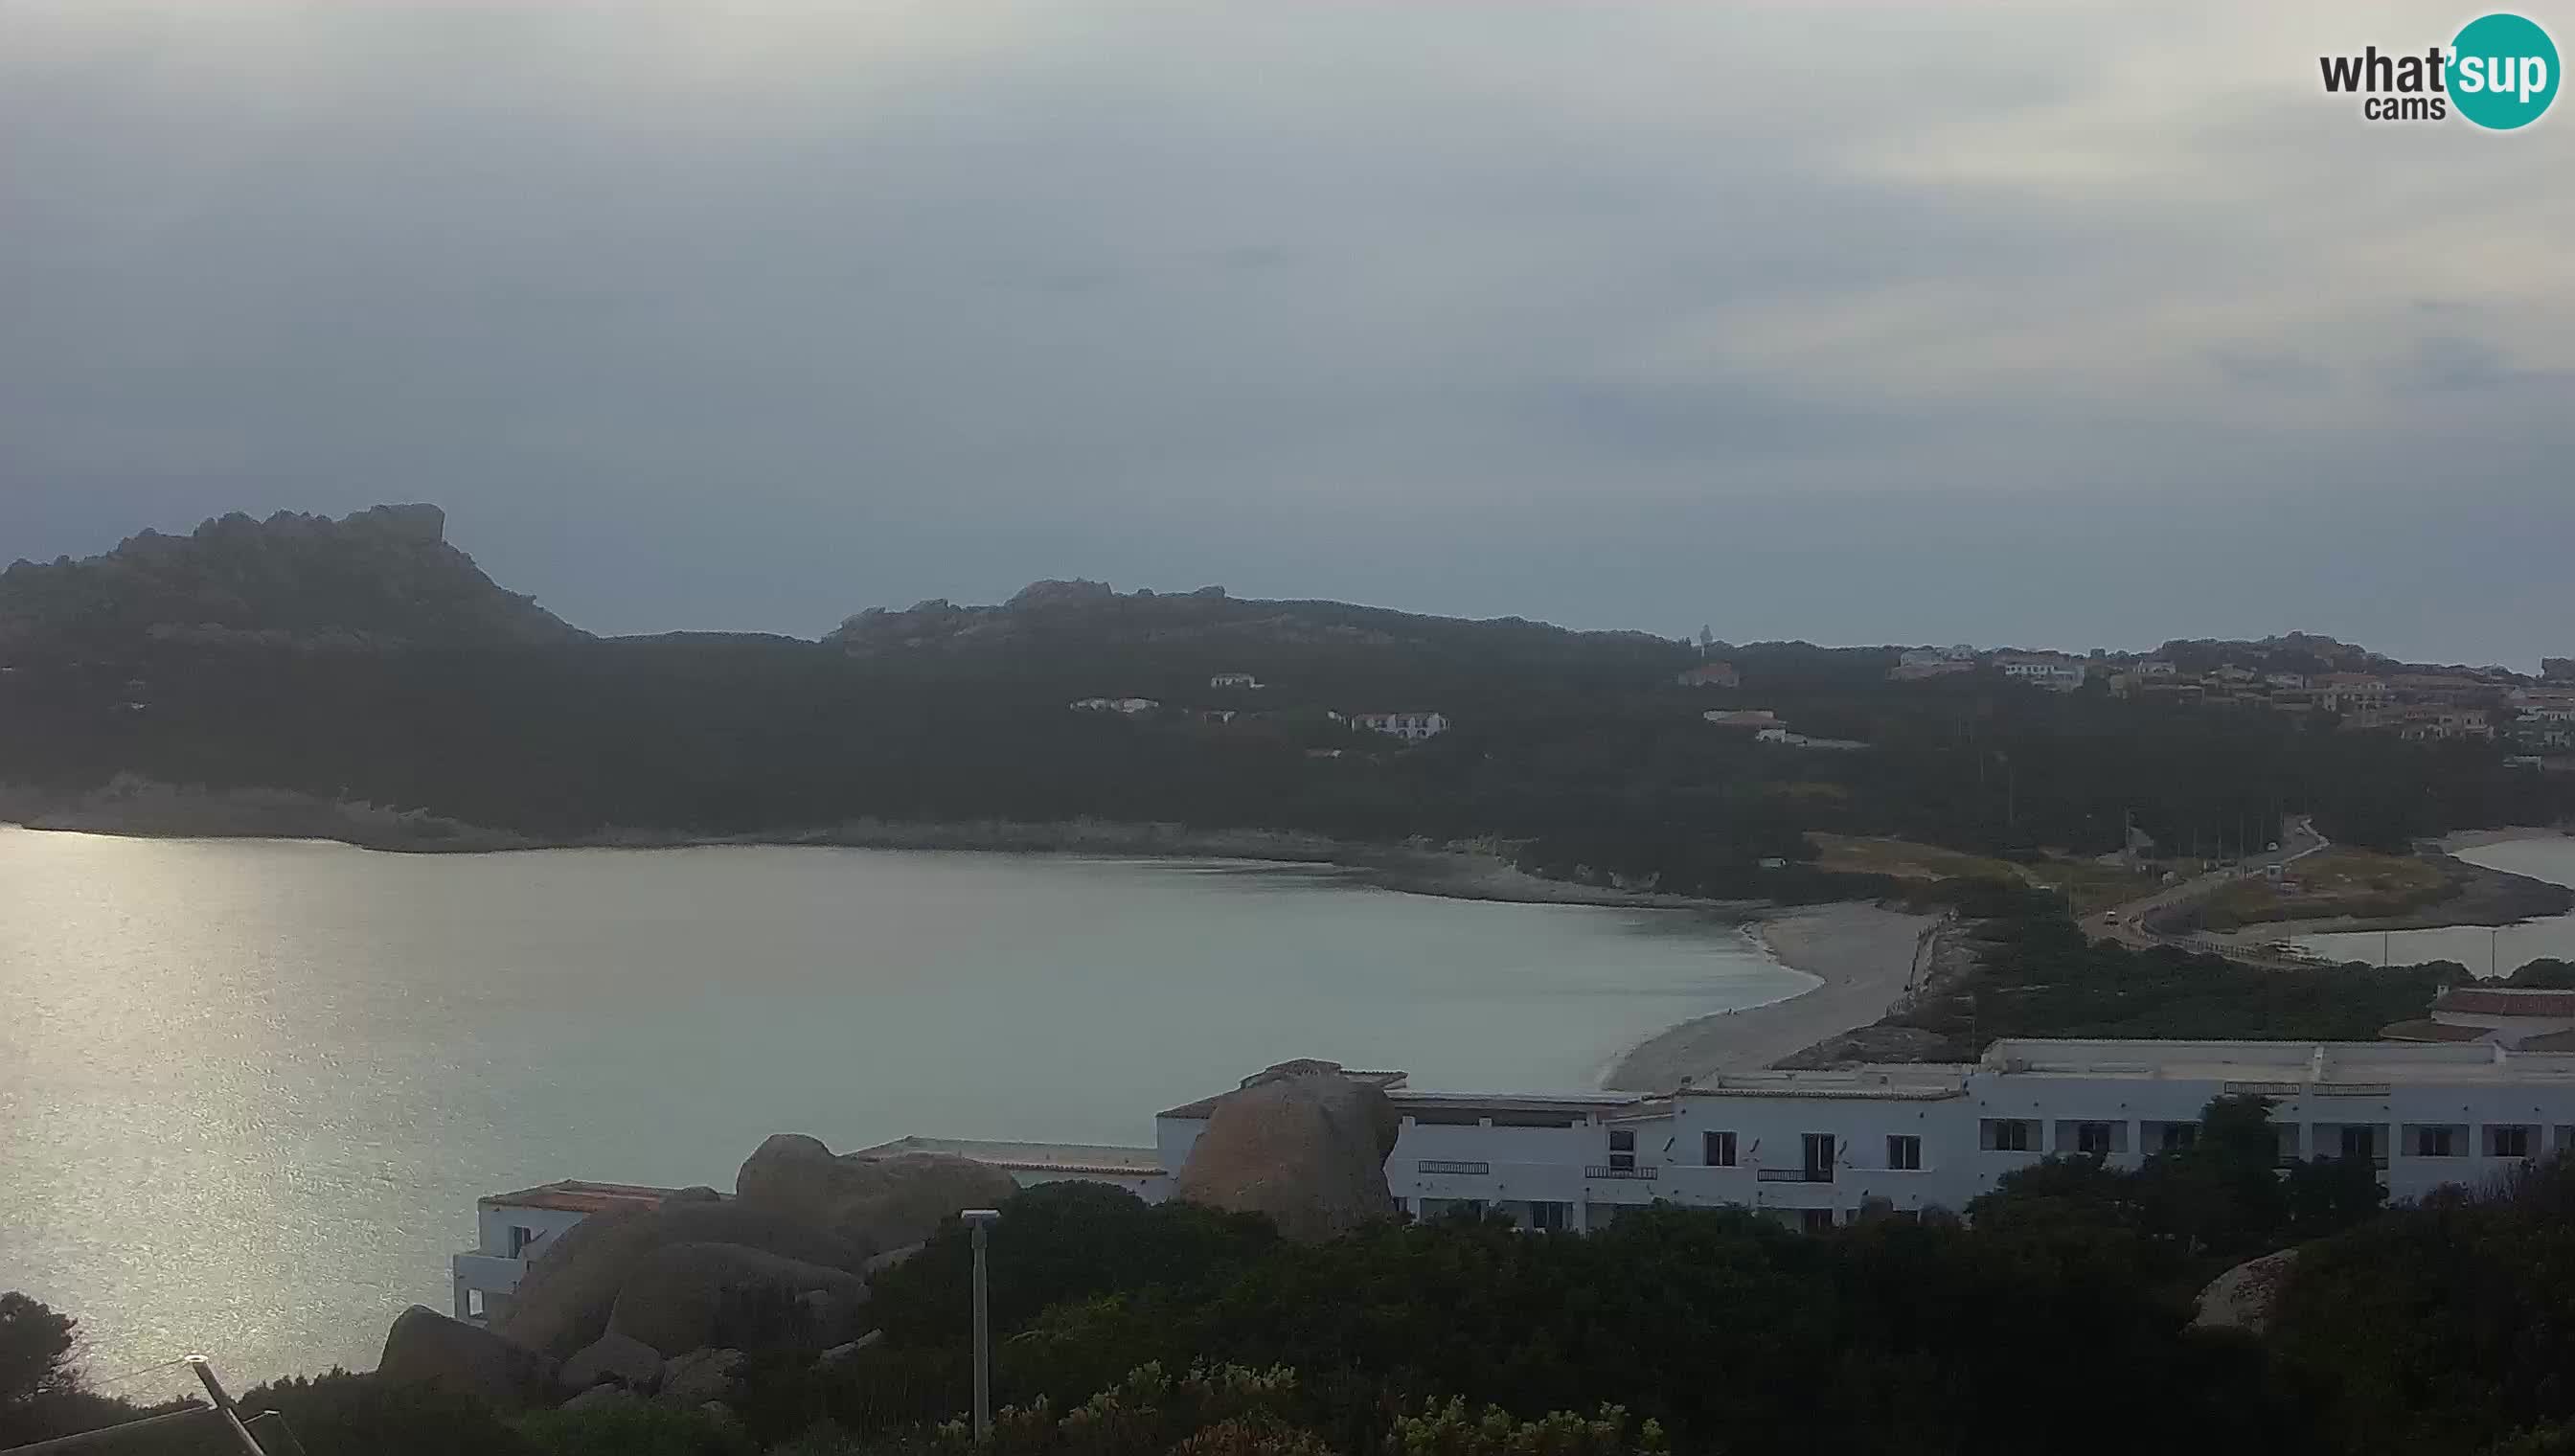 Spletna kamera v živo Capo Testa plaža dveh morij – Santa Teresa Gallura – Sardinija